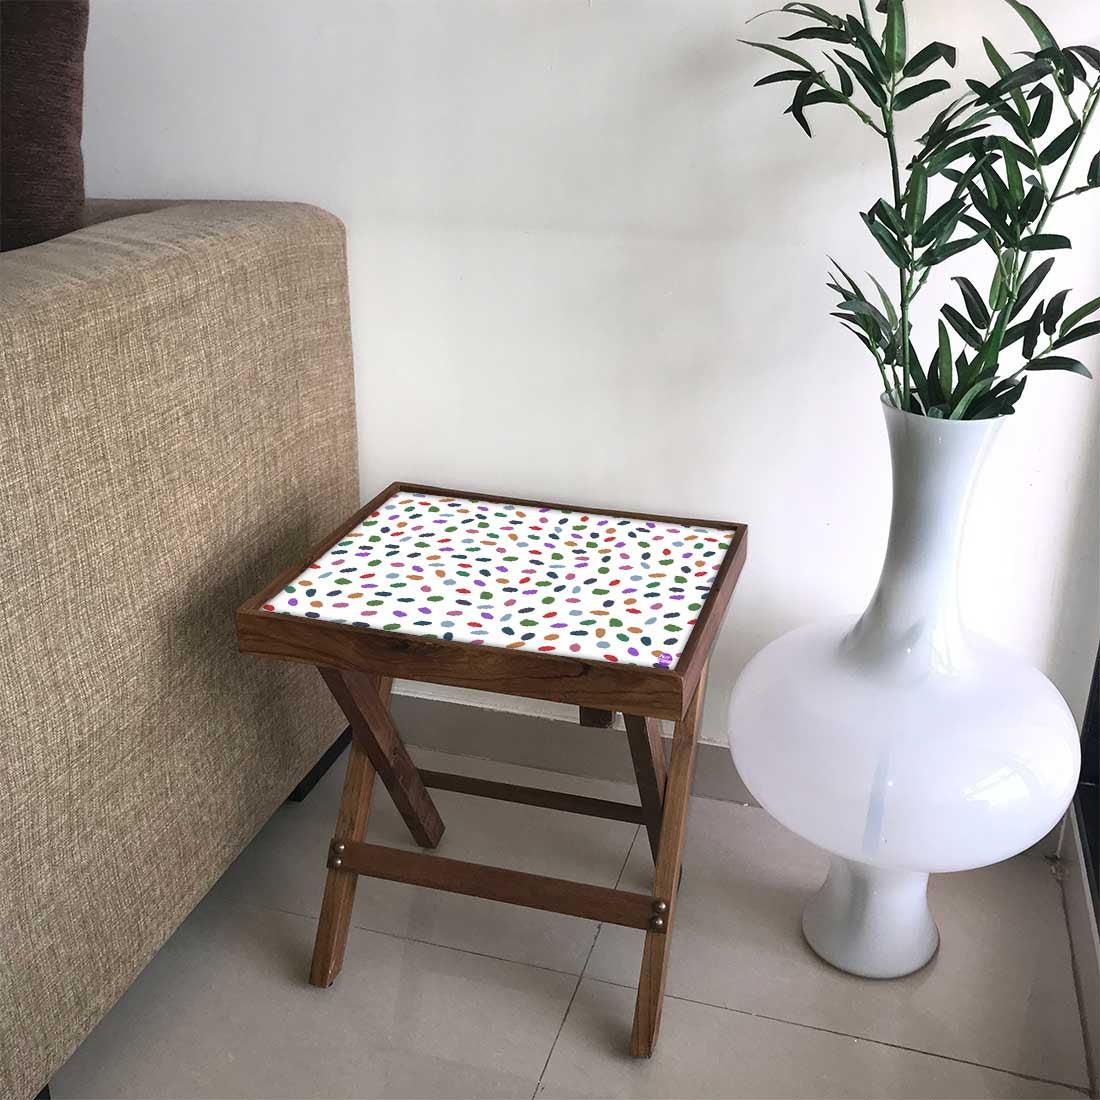 Folding Side Table Bed - Teak Wood - Cute Dots